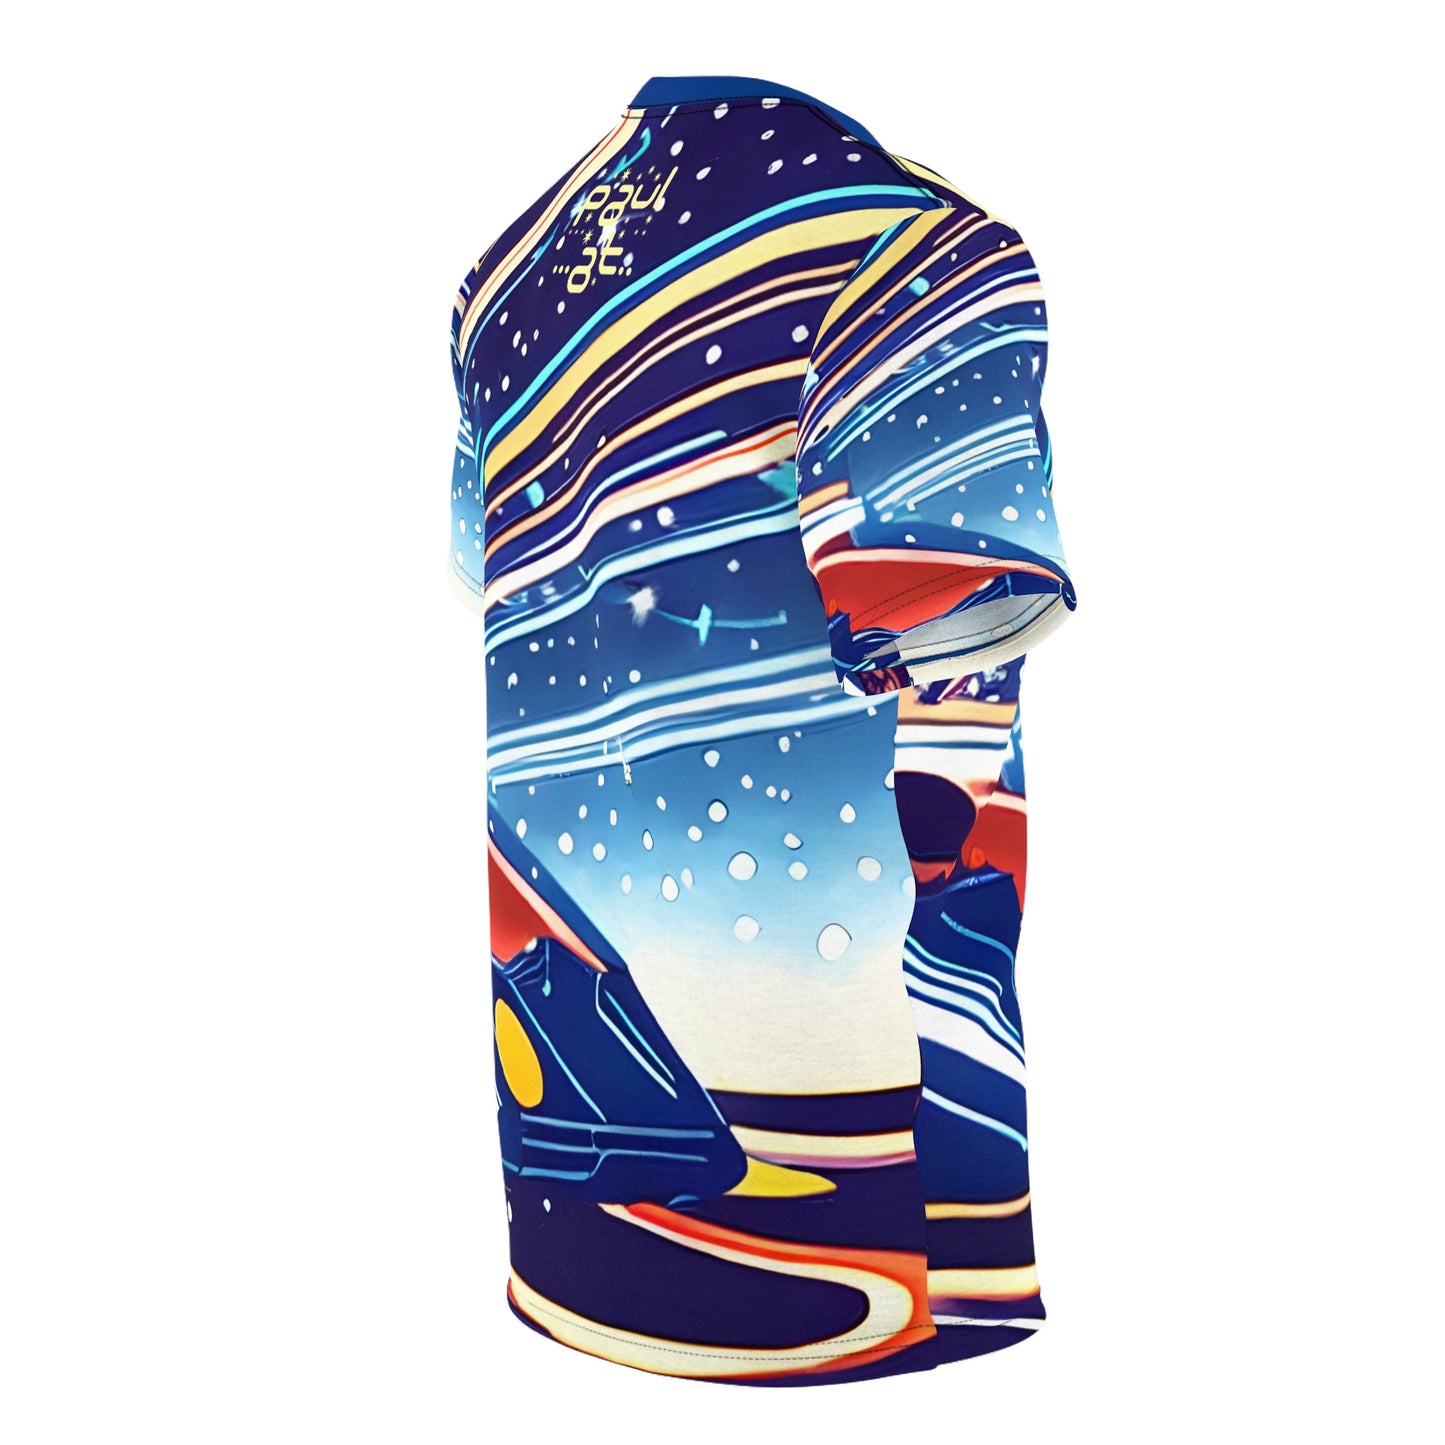 Space Race Unisex T-Shirt